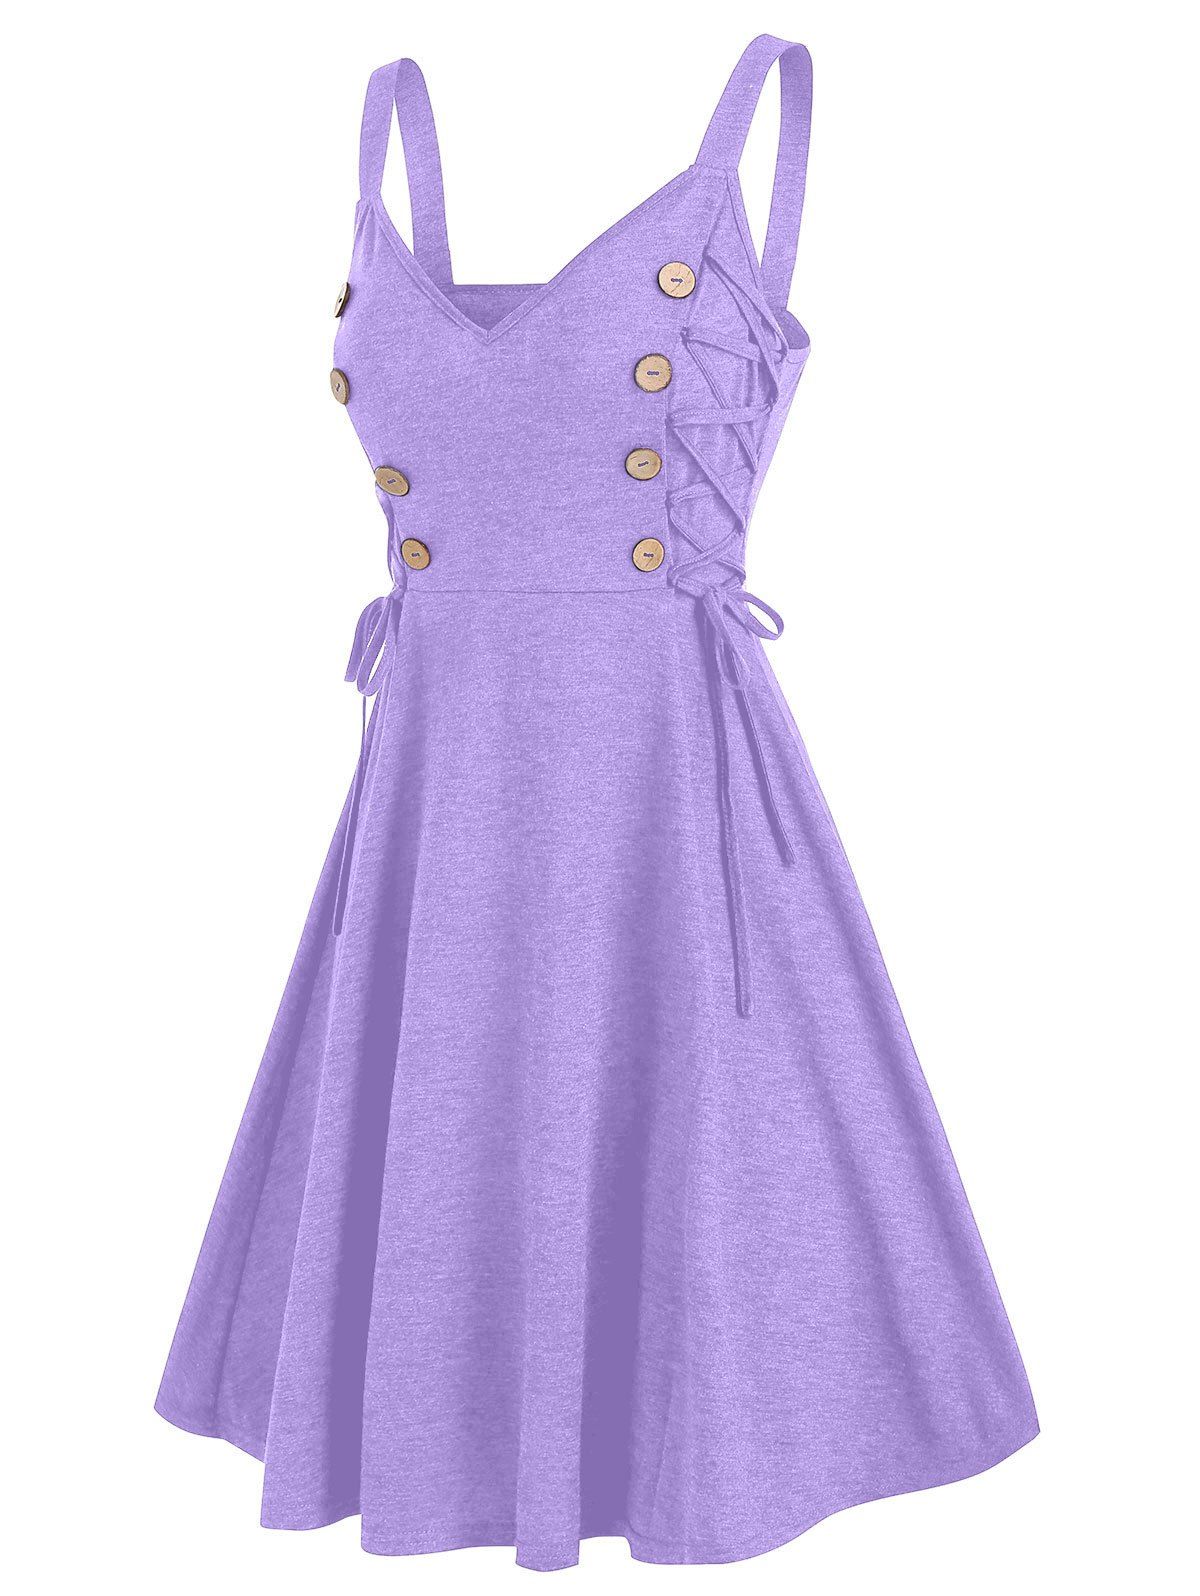 Lace Up Mock Button A Line Cami Dress - LIGHT PURPLE 3XL